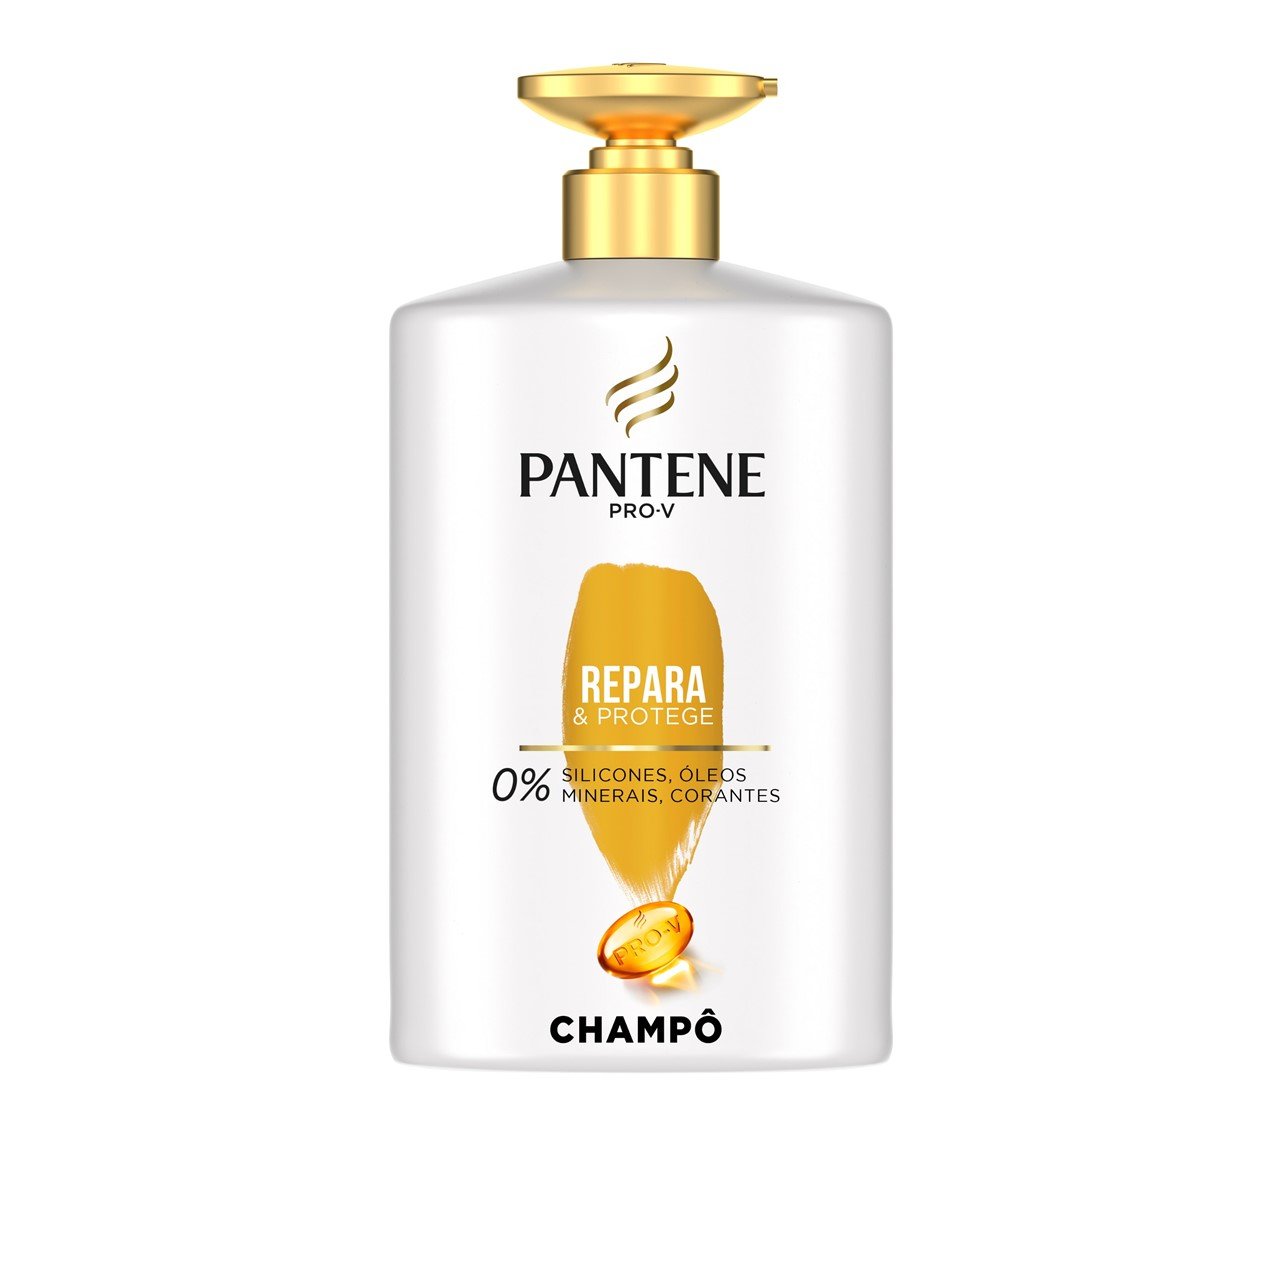 Pantene Pro-V Repair & Protect Shampoo 1L